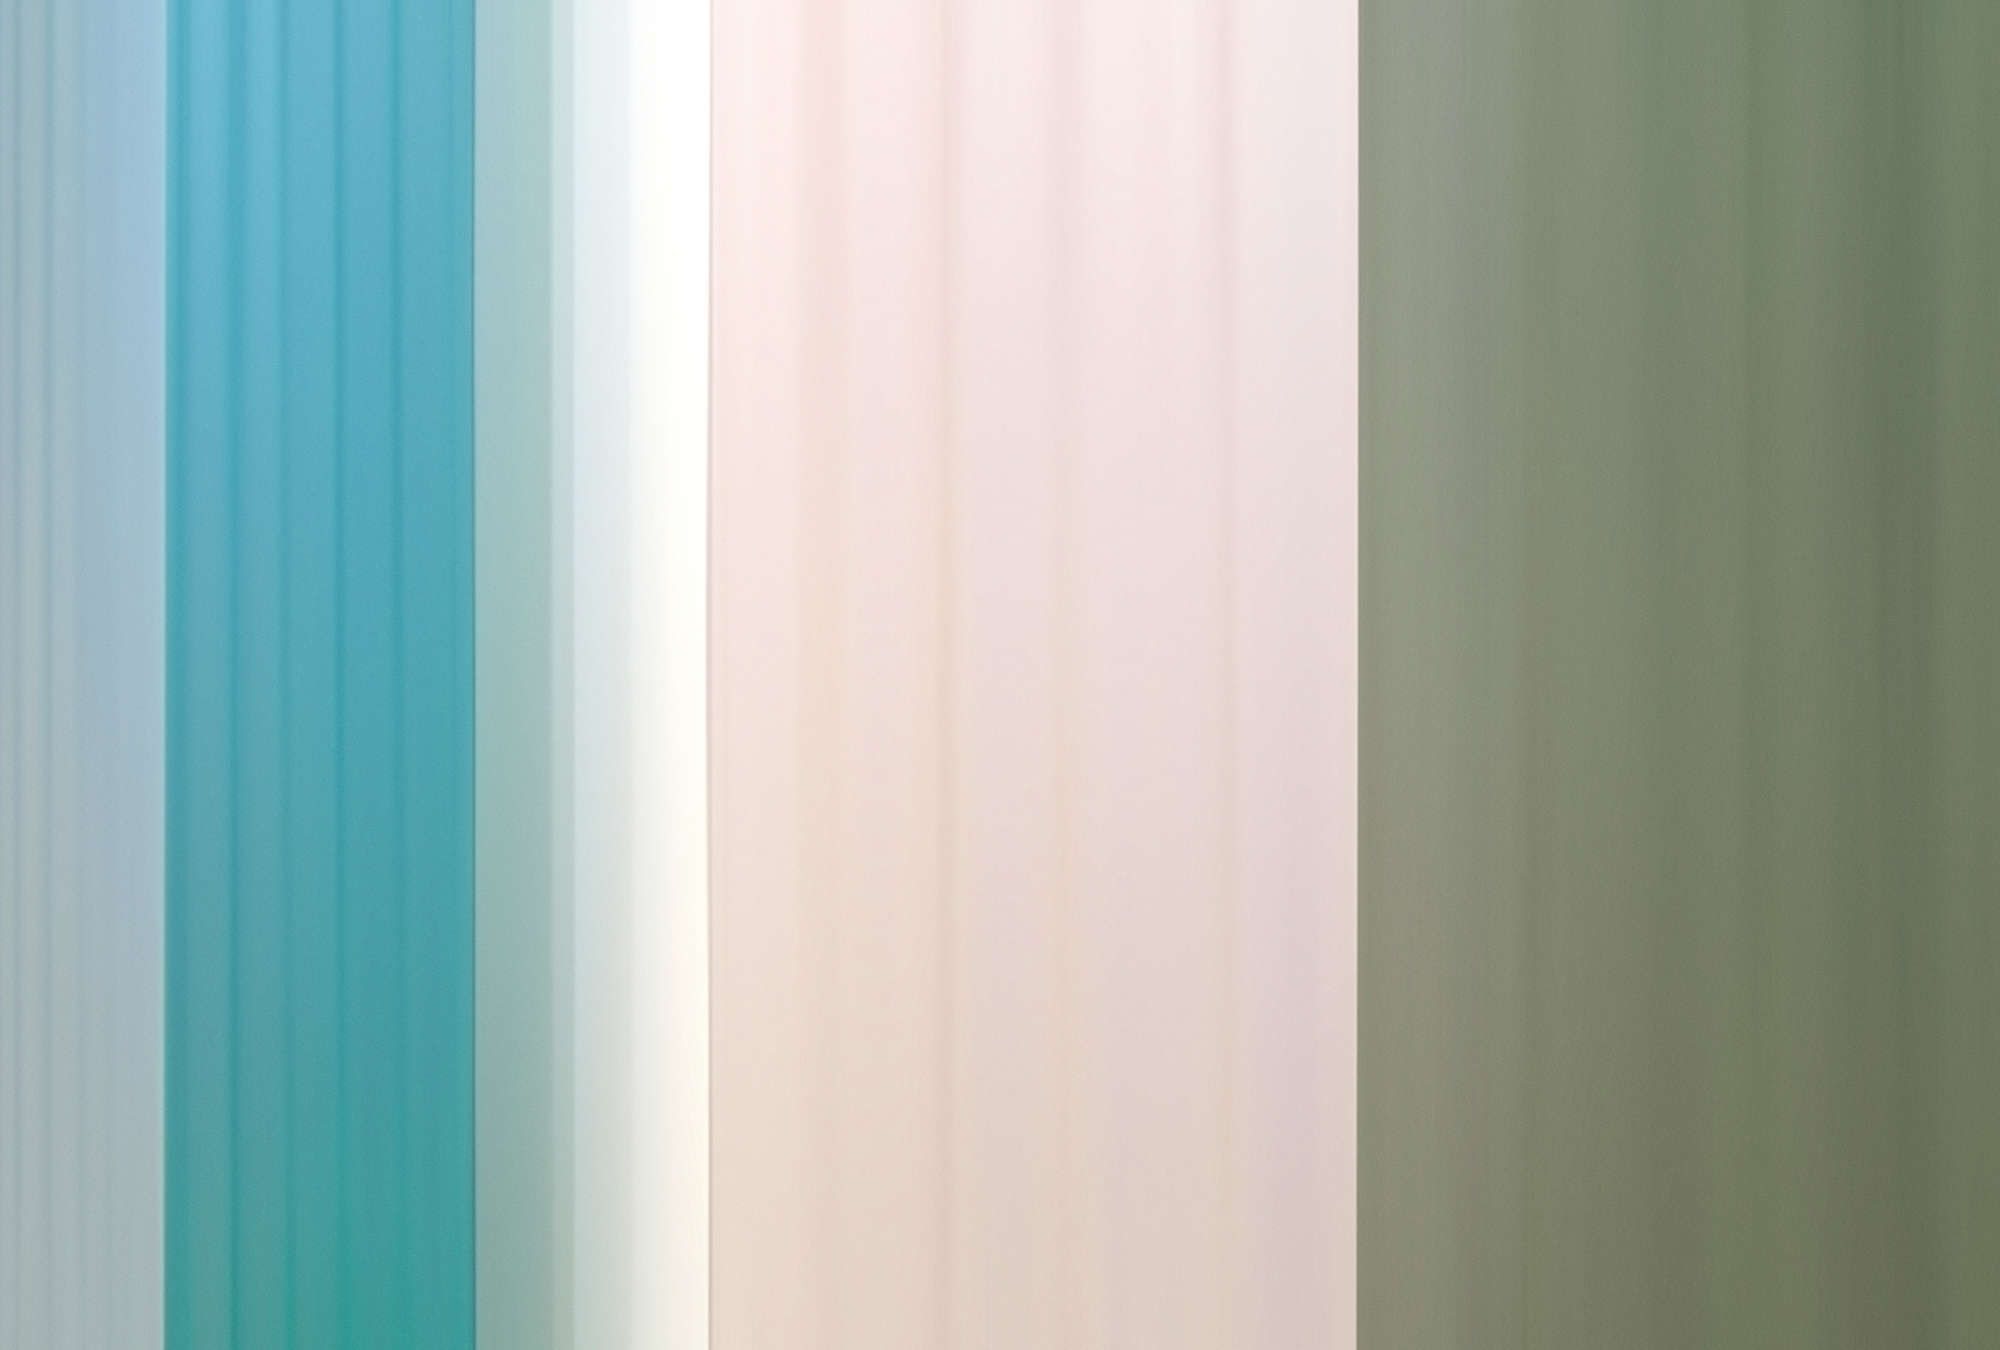             Digital behang »co-colores 4« - Kleurverloop met strepen - turquoise, crème, groen | Licht structuurvlies
        